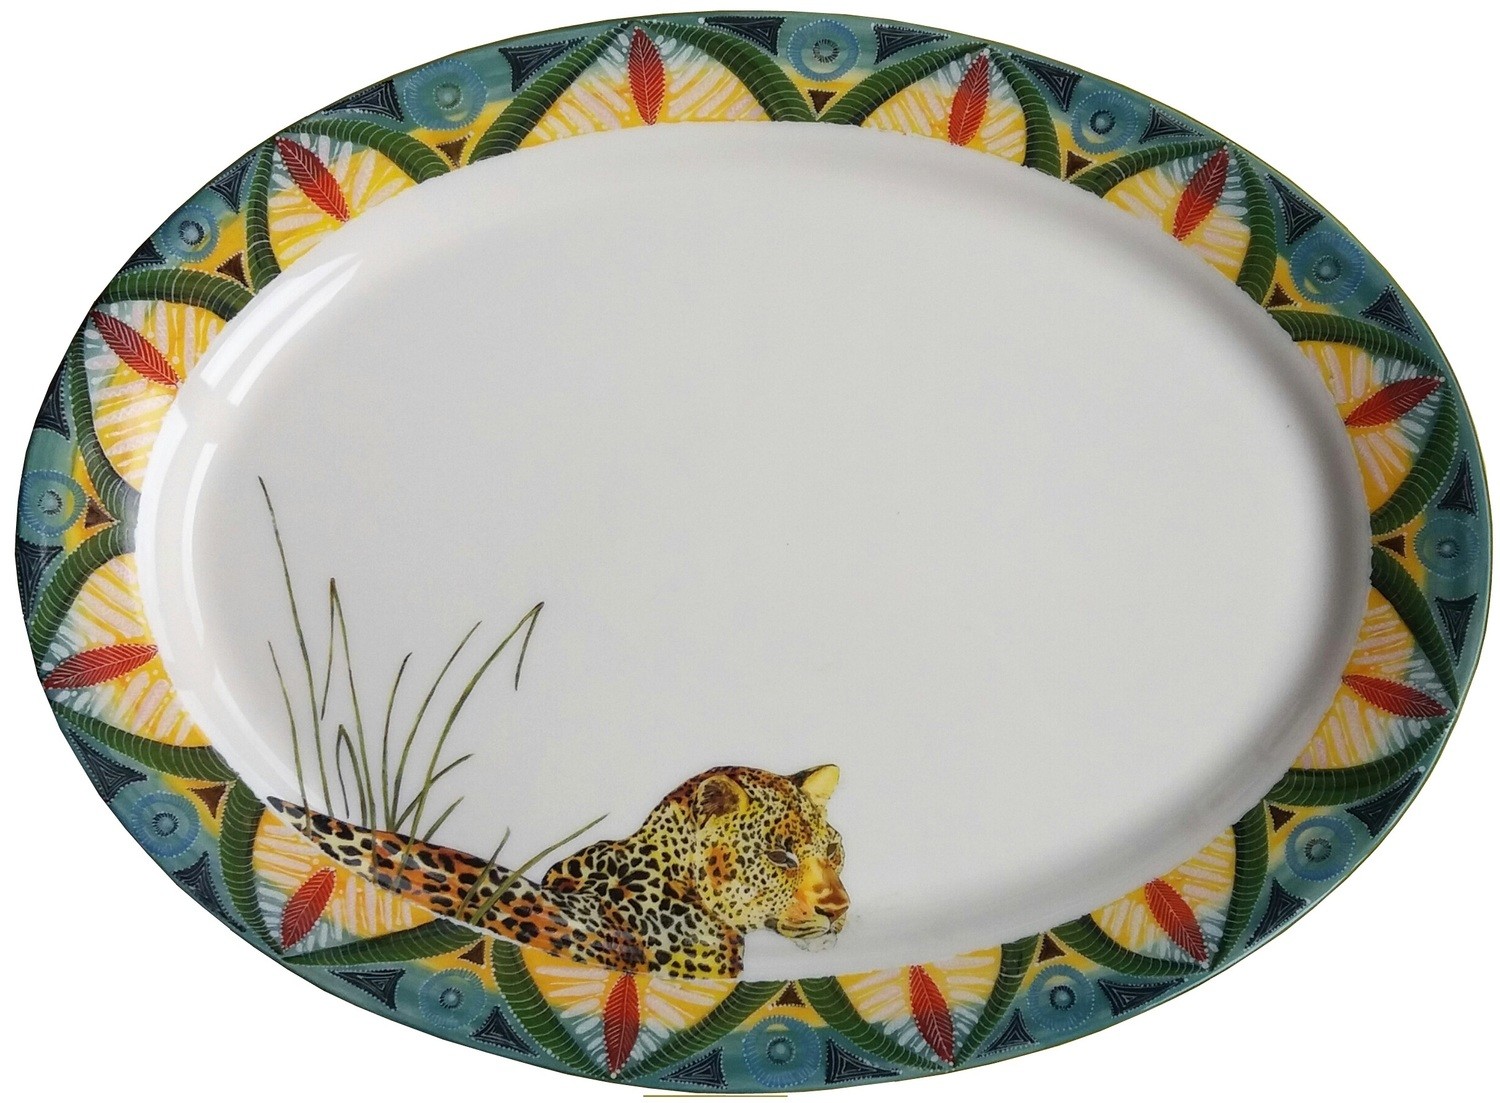 Oval Platter 16" x 12" Leopard